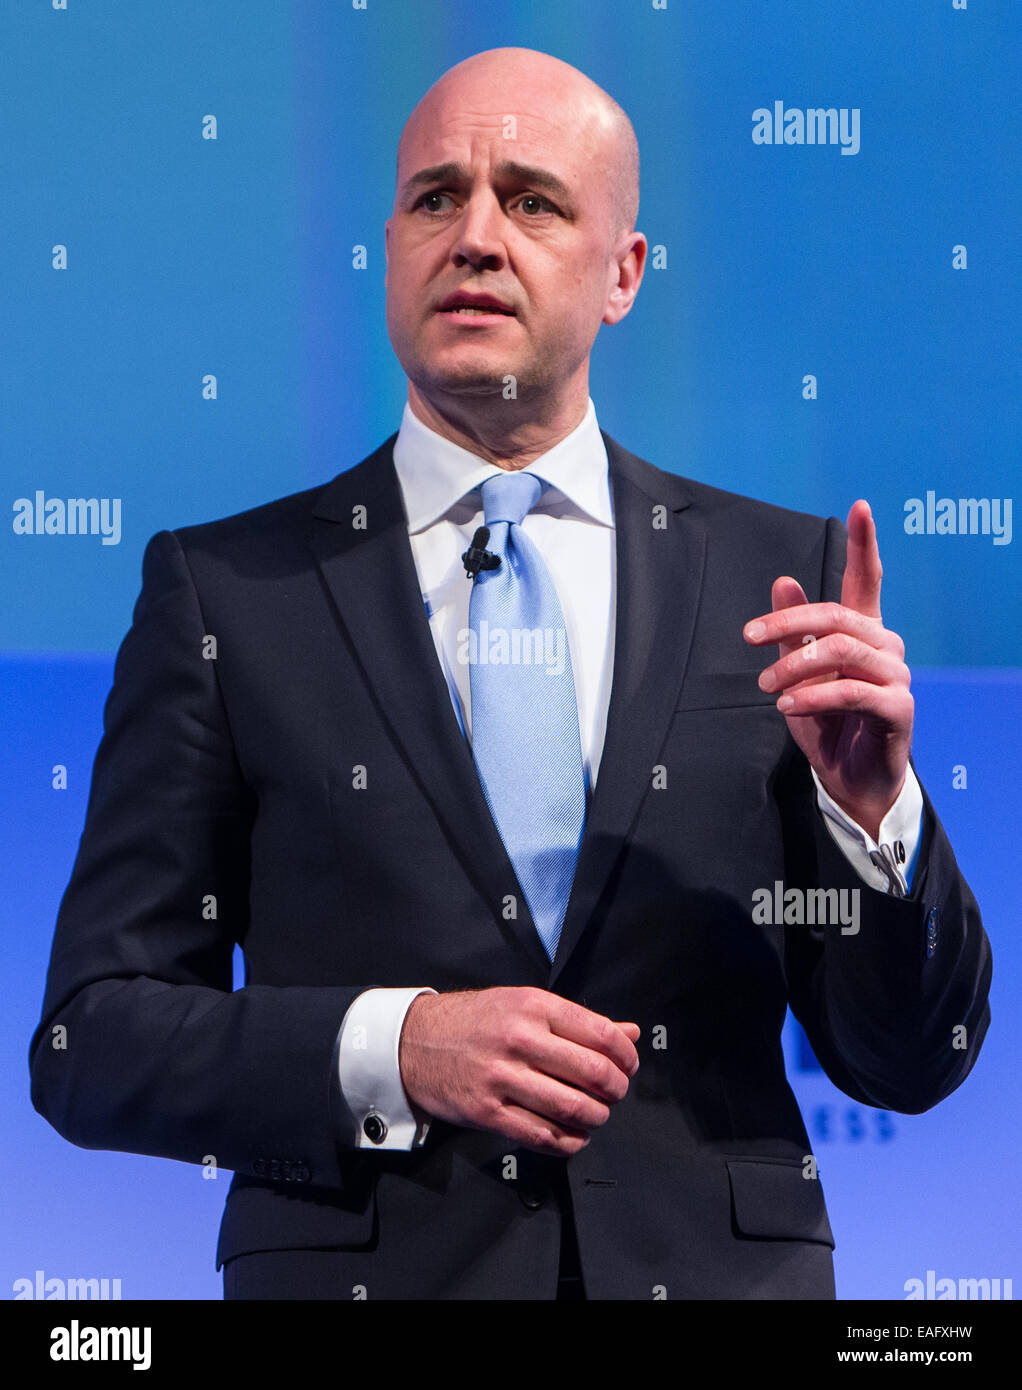 Fredrik Reinfeldt, Führer der gemäßigten Partei-libyscher Politiker, Premierminister von Schweden Stockfoto